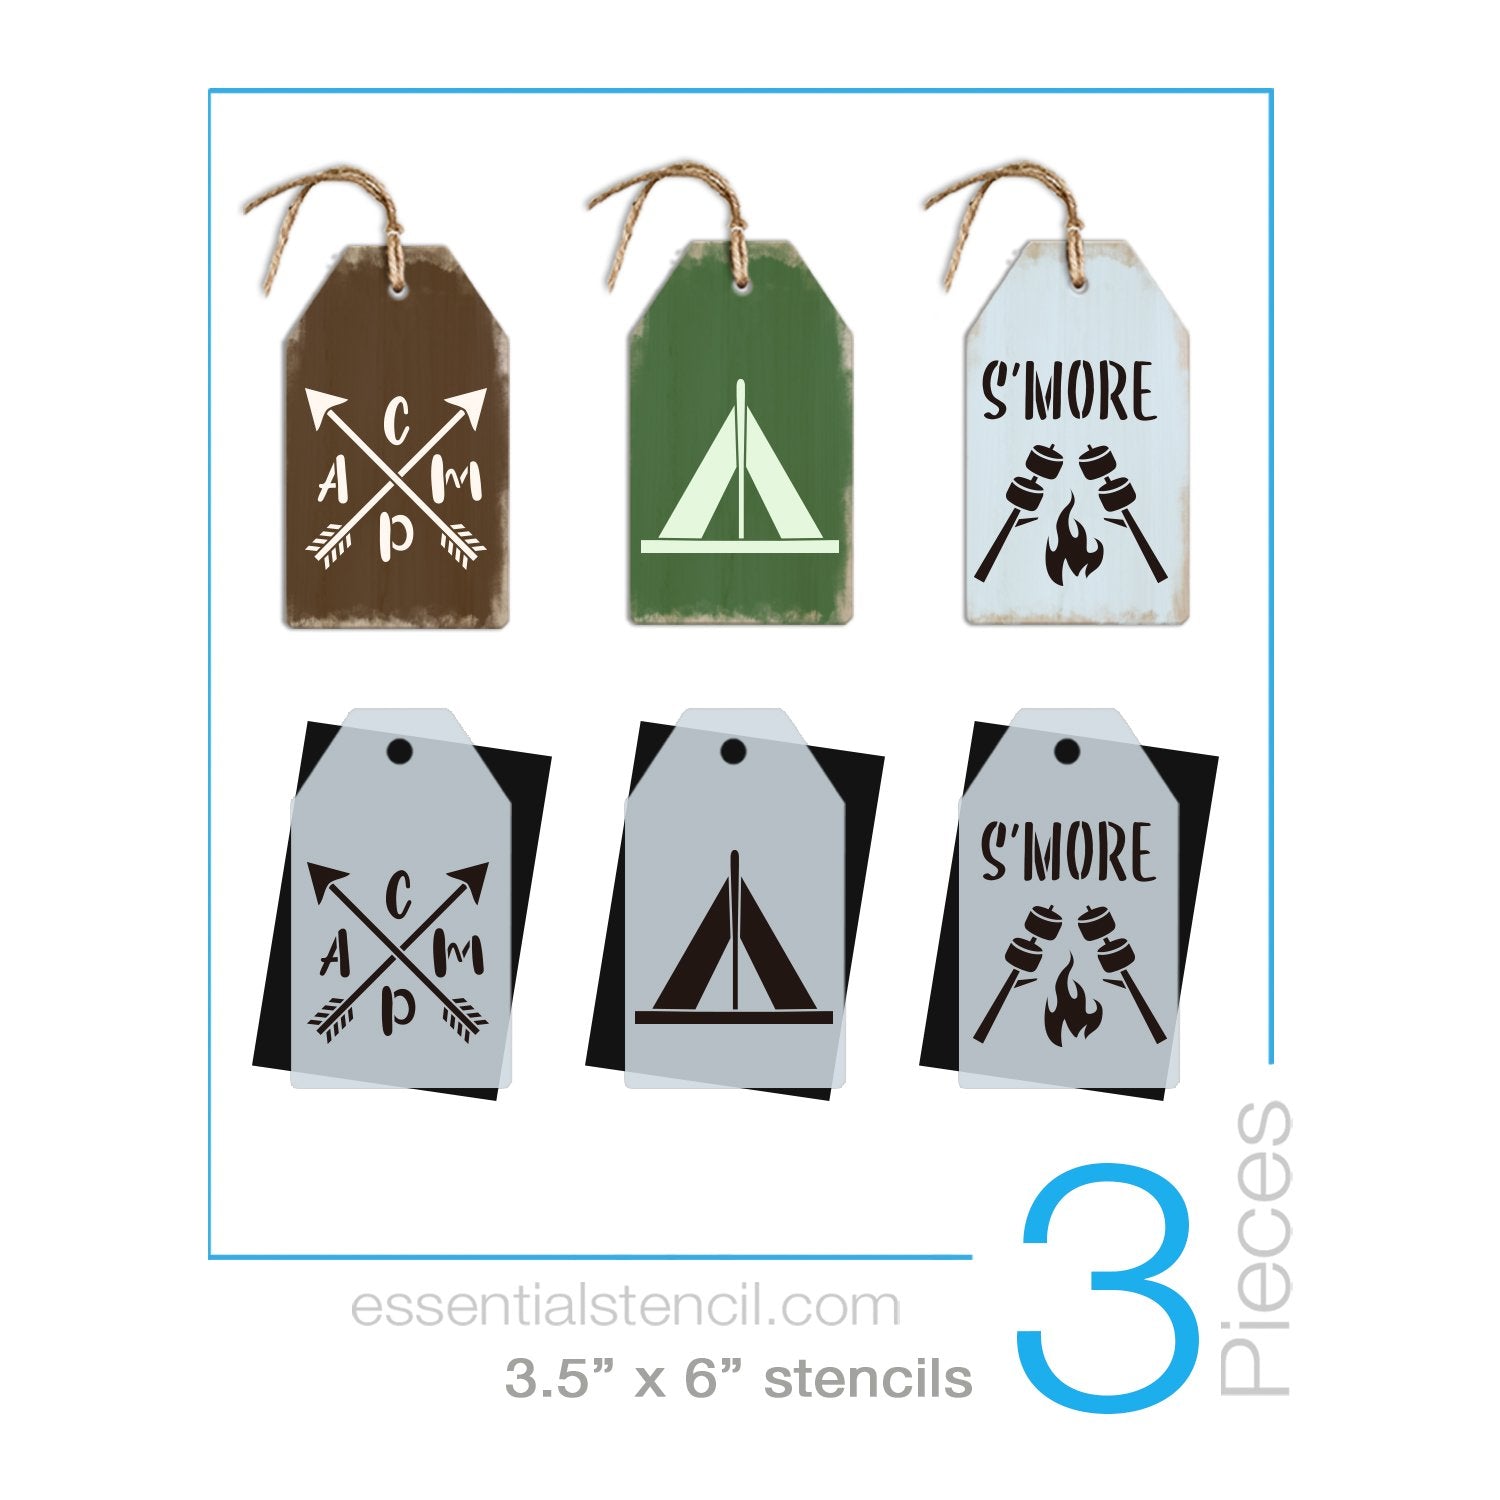 DIY reusable camping stencils, mini tag camping stencils, CAMP with arrows stencil, Tent stencil, S'more stencils, smore stencils, campfire stencil 